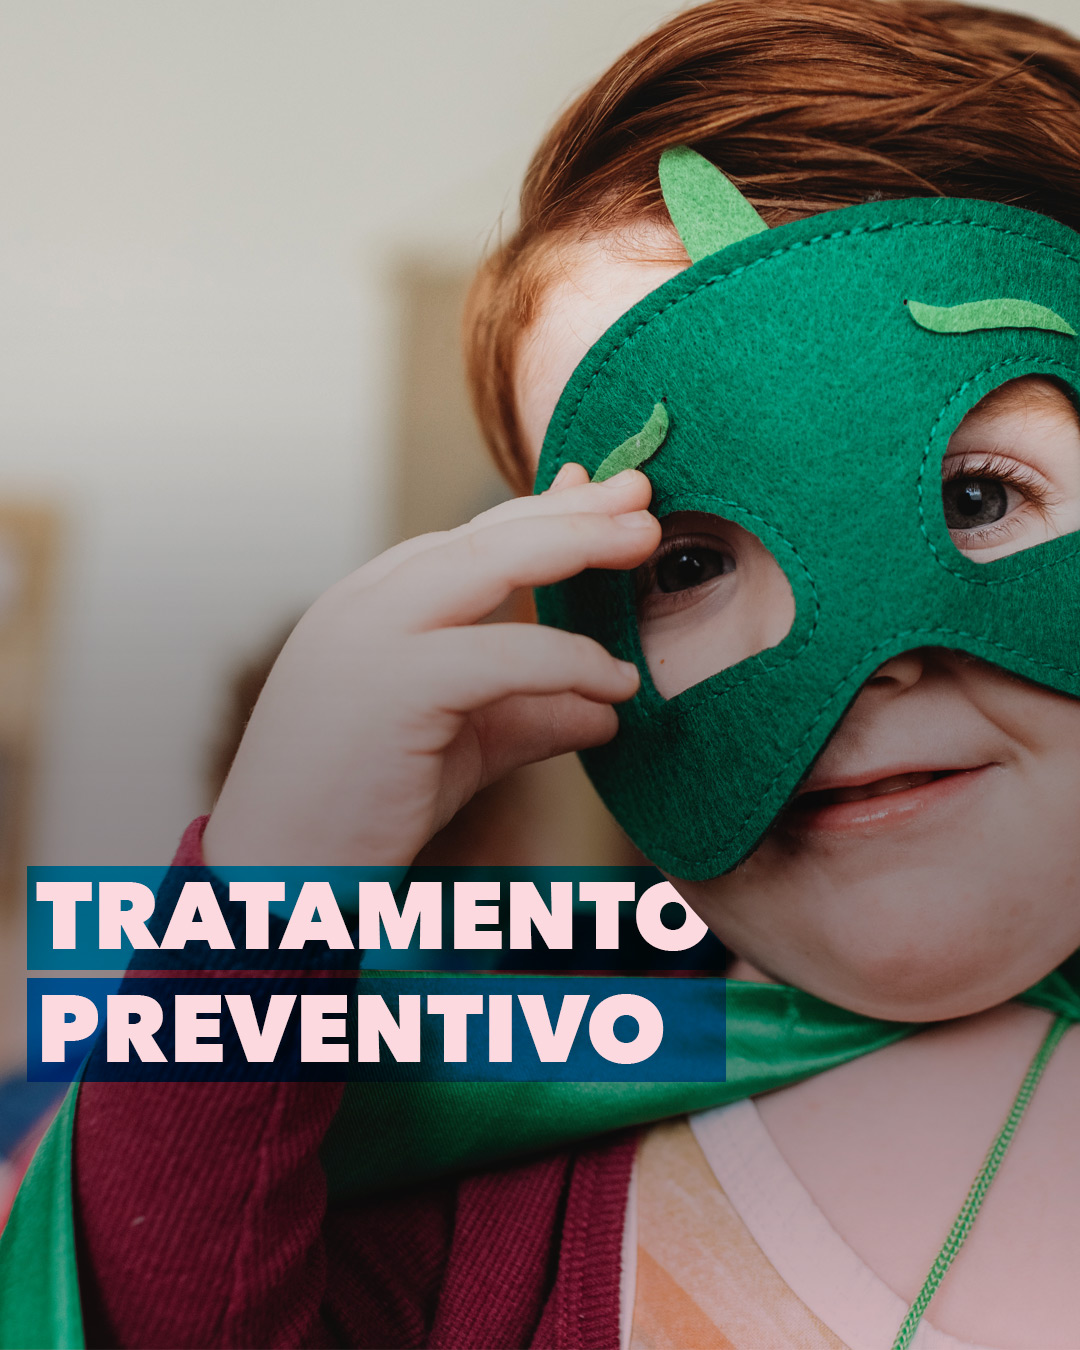 Read more about the article Tratamento Preventivo para Crianças.